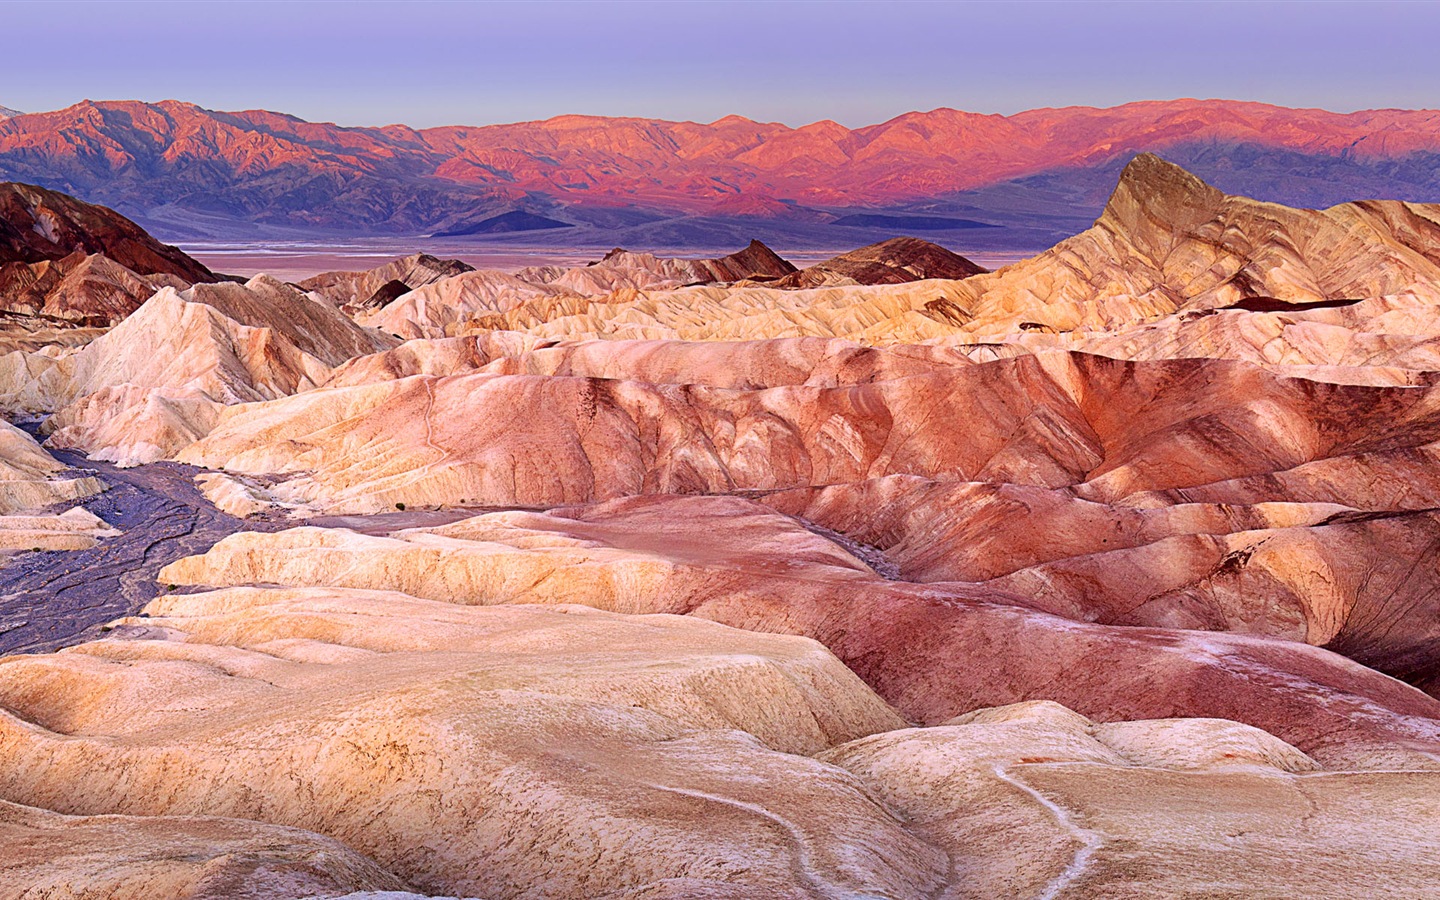 Les déserts chauds et arides, de Windows 8 fonds d'écran widescreen panoramique #10 - 1440x900